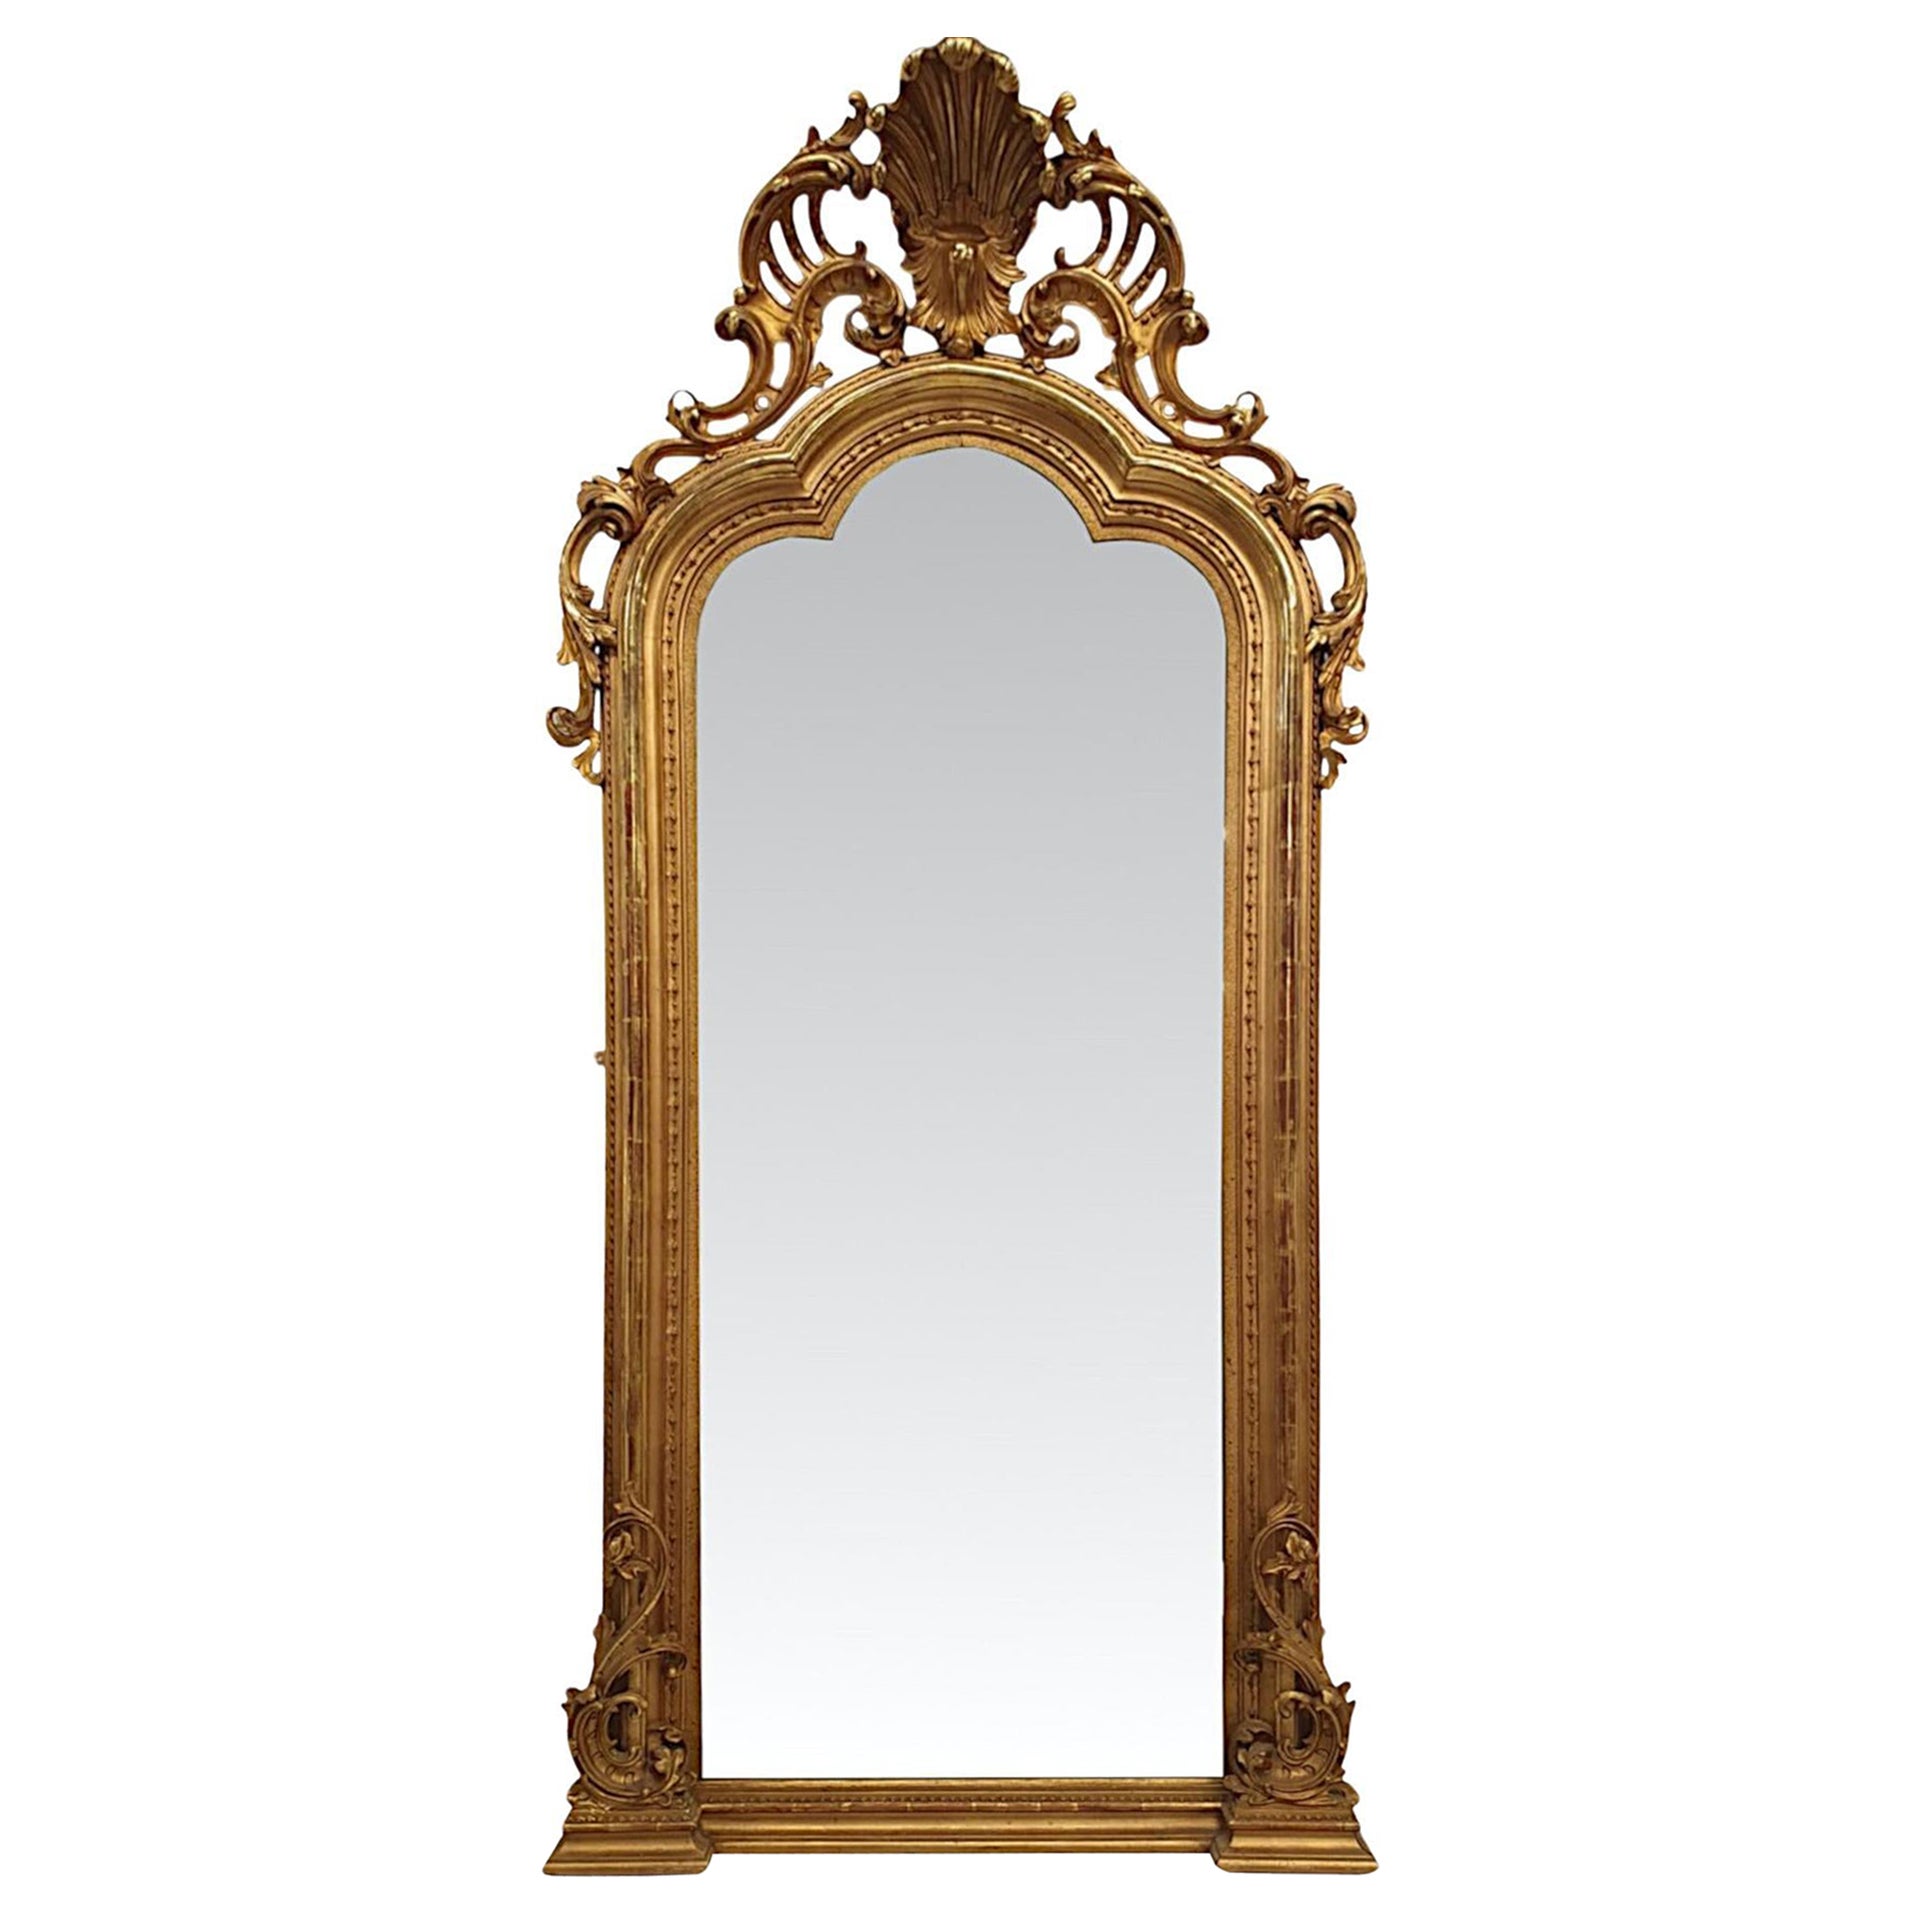  Eine fabelhafte große 19. Jahrhundert Giltwood Halle oder Pier oder Dressing Mirror